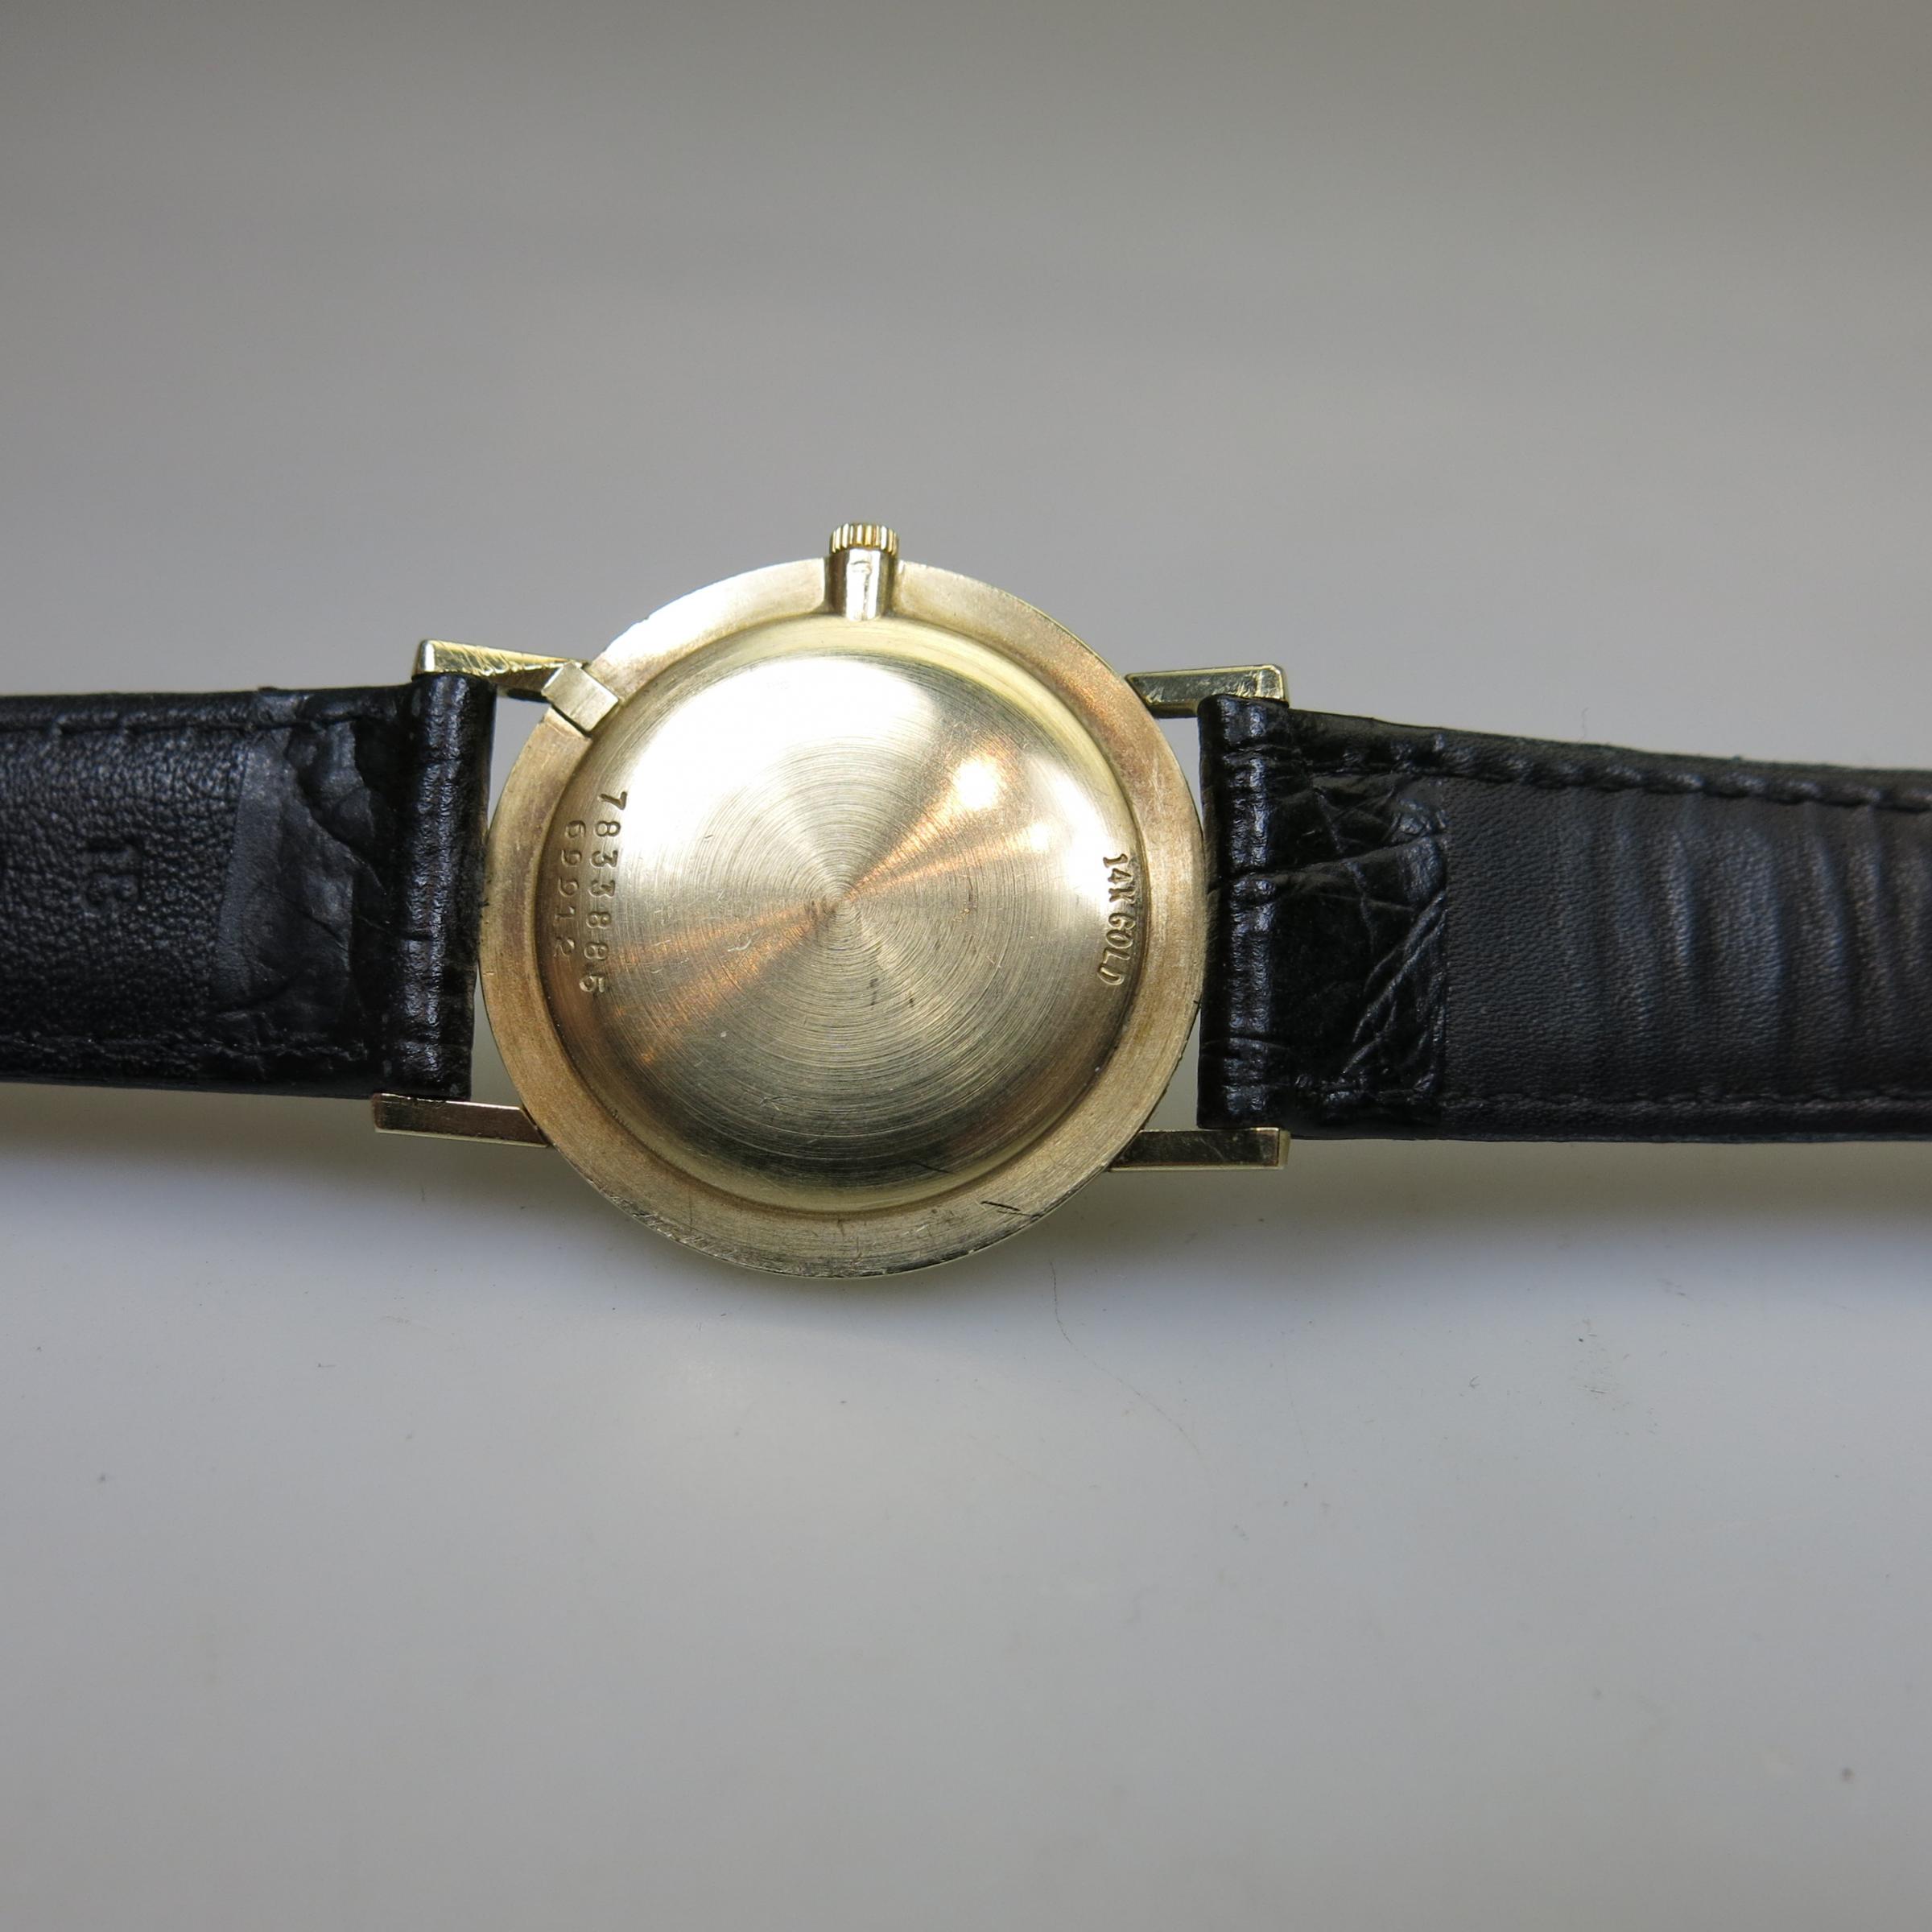 Movado Wristwatch